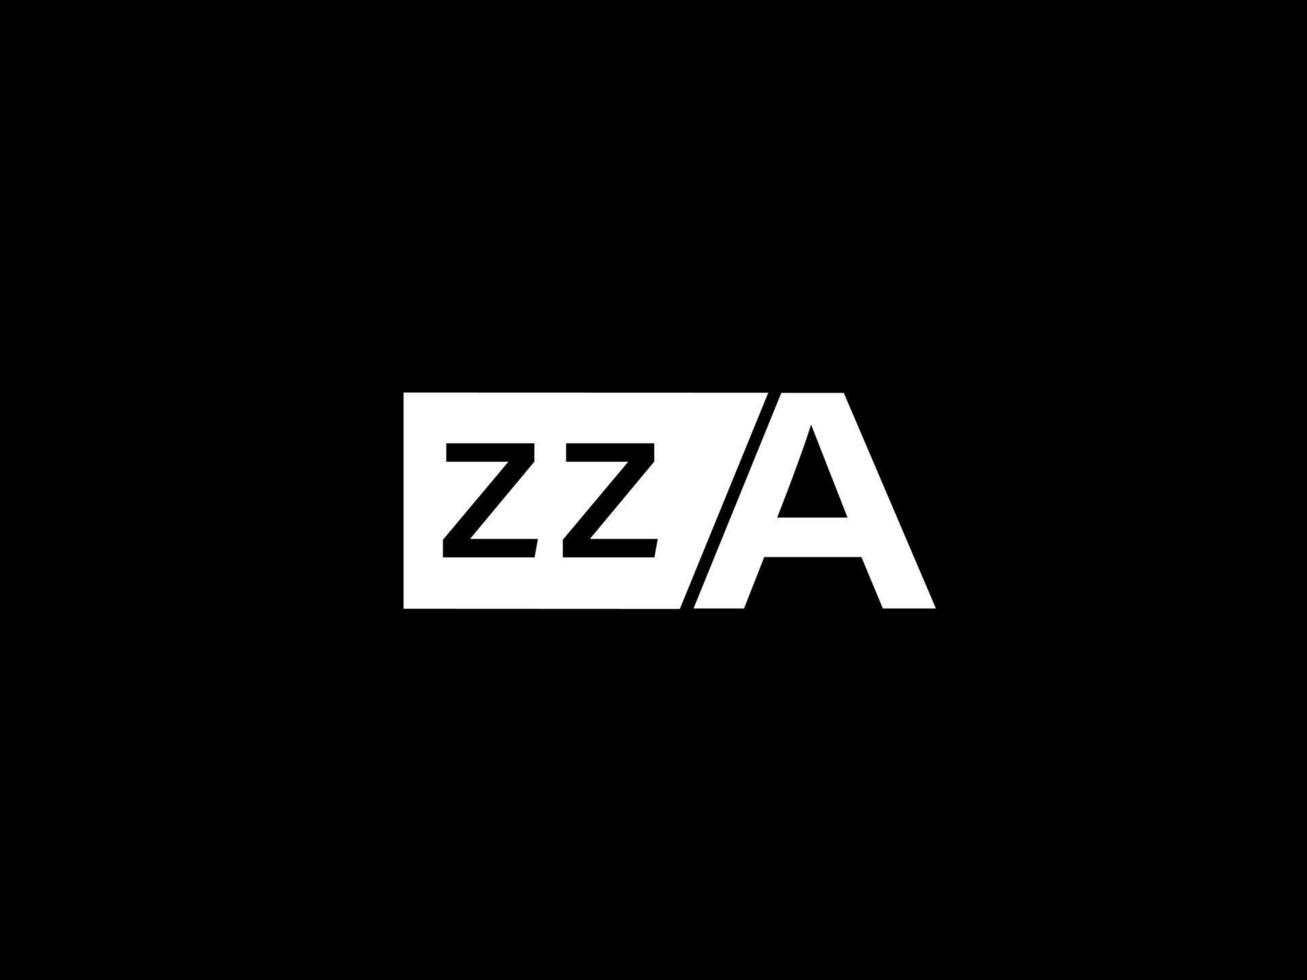 zza logotyp och grafik design vektor konst, ikoner isolerat på svart bakgrund